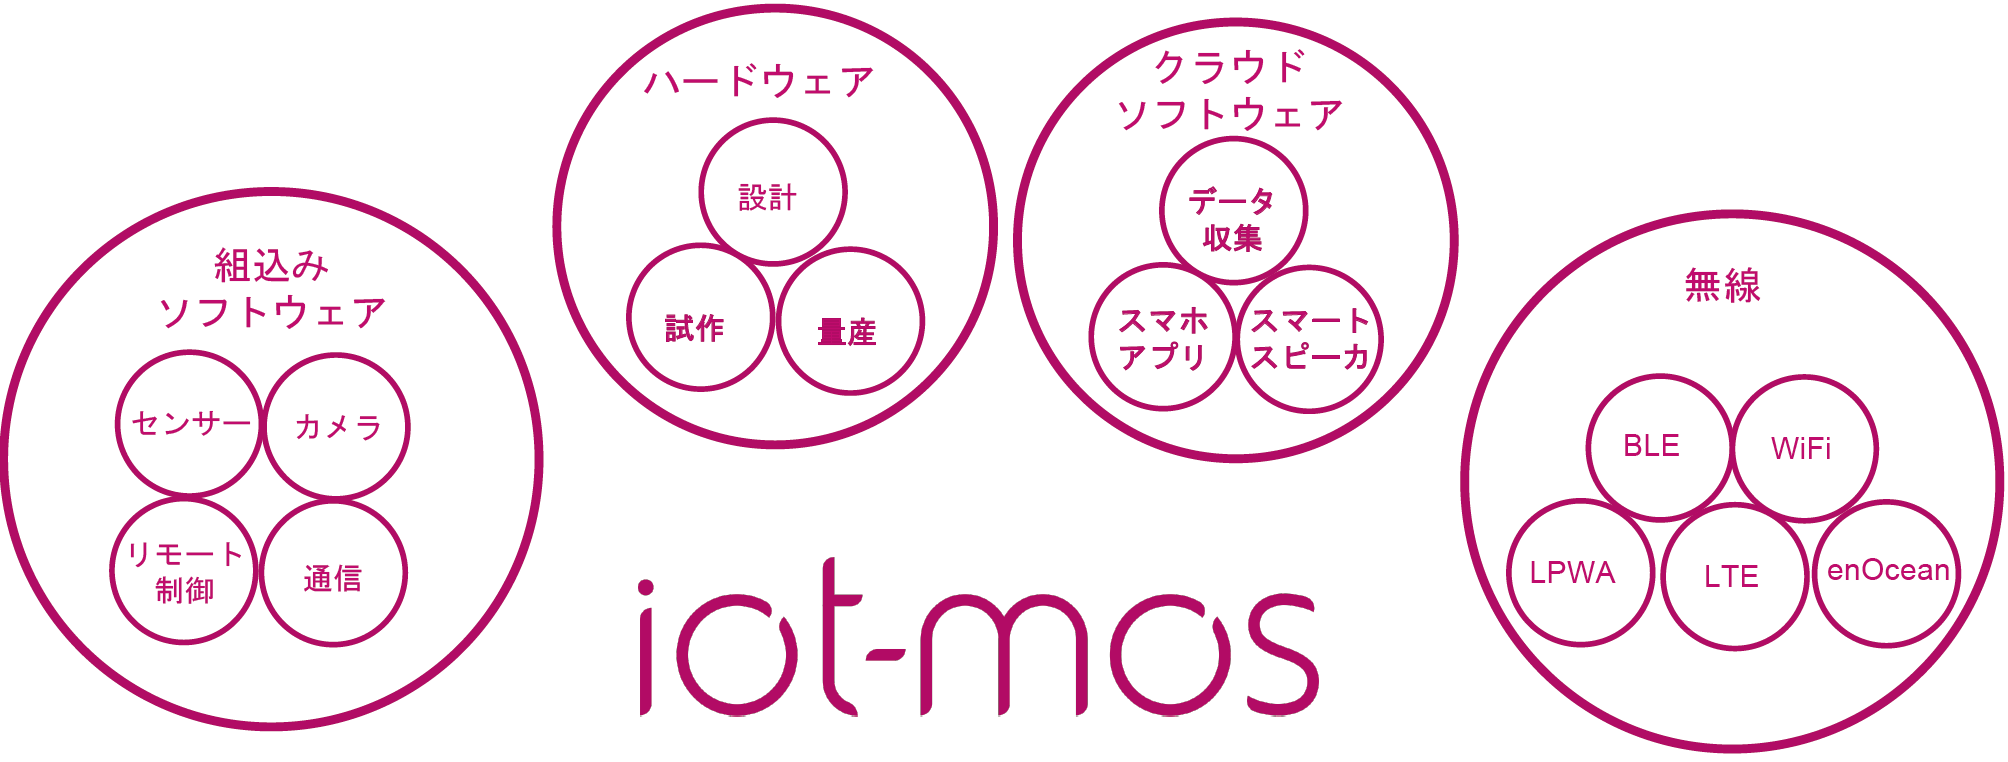 iot-mosの技術